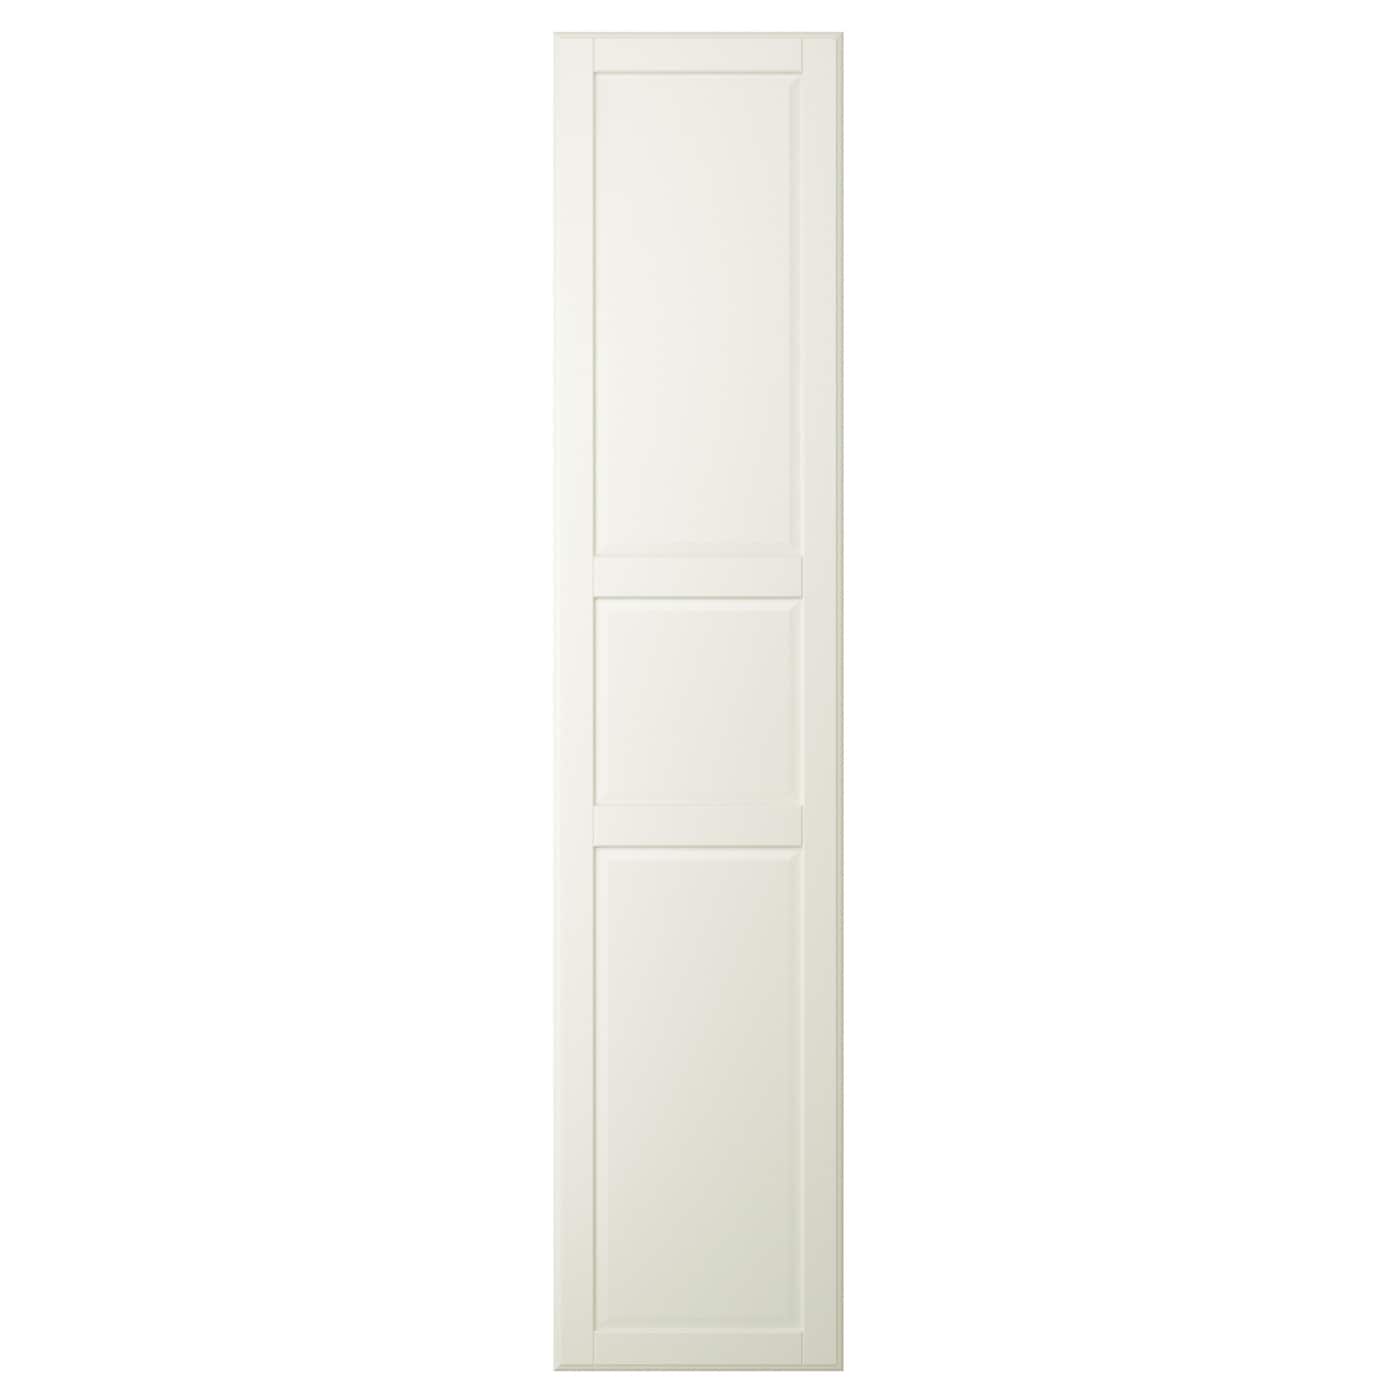 Дверь с петлями - TYSSEDAL  IKEA/  ТИССЕДАЛЬ ИКЕА,  229х50 см,  бежевый